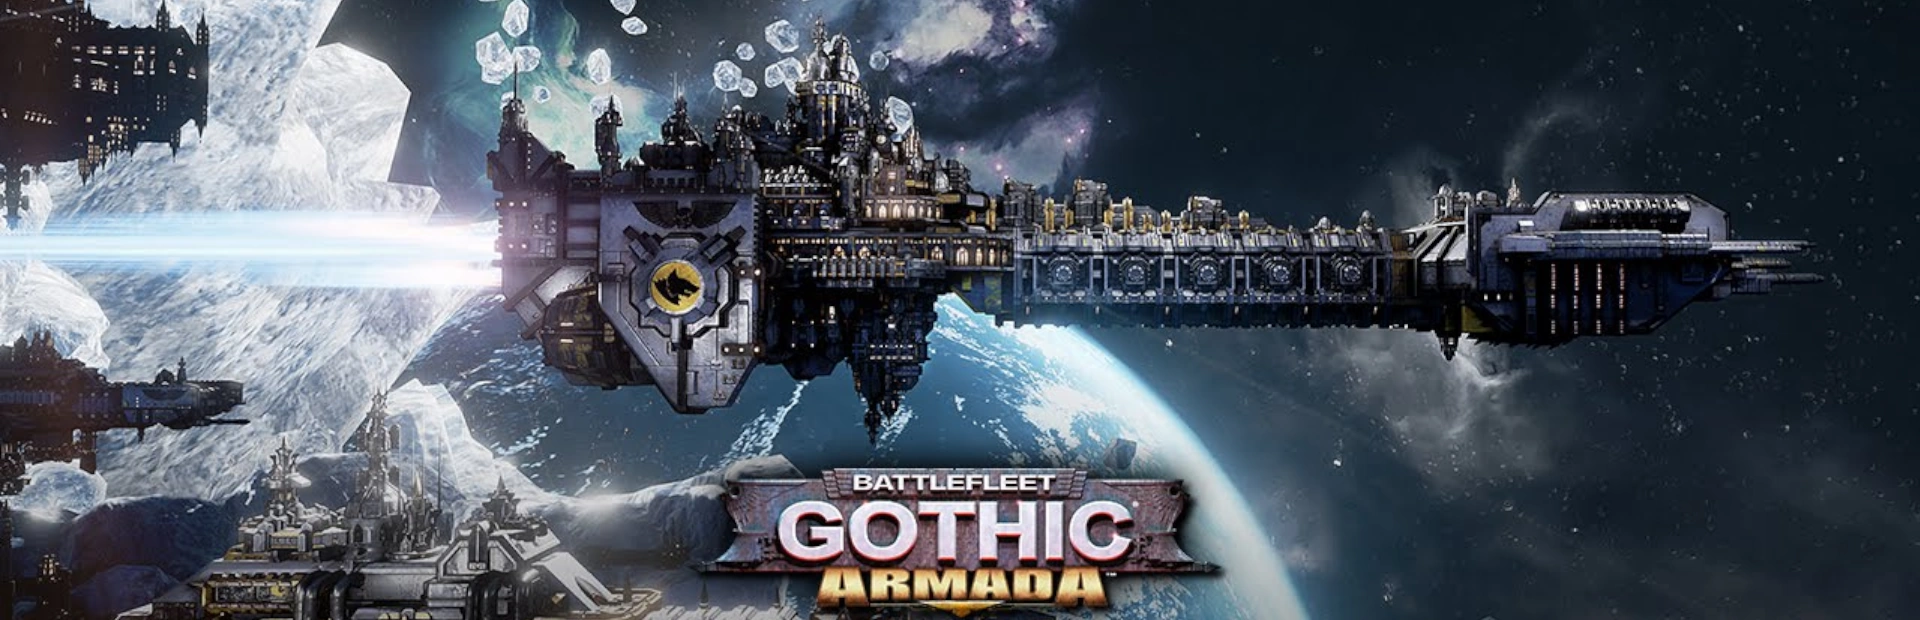 دانلود بازی Battlefleet Gothic Armada برای PC | گیمباتو